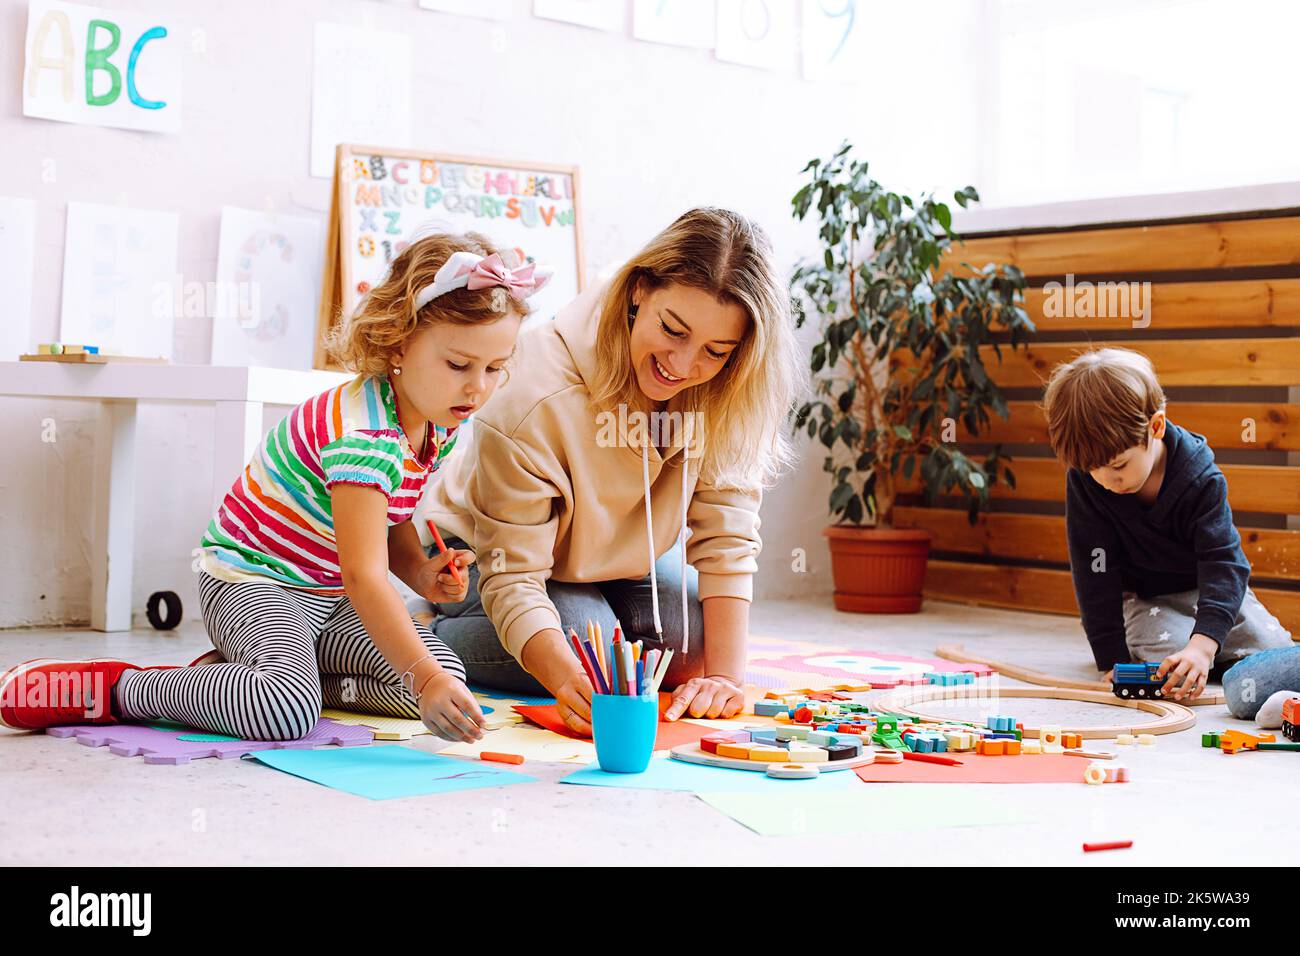 Una psicologa femminile sorridente gioca e prova i bambini, crea artigianato, giocattoli fatti a mano, arte in centro di sviluppo. Problema sociale Foto Stock